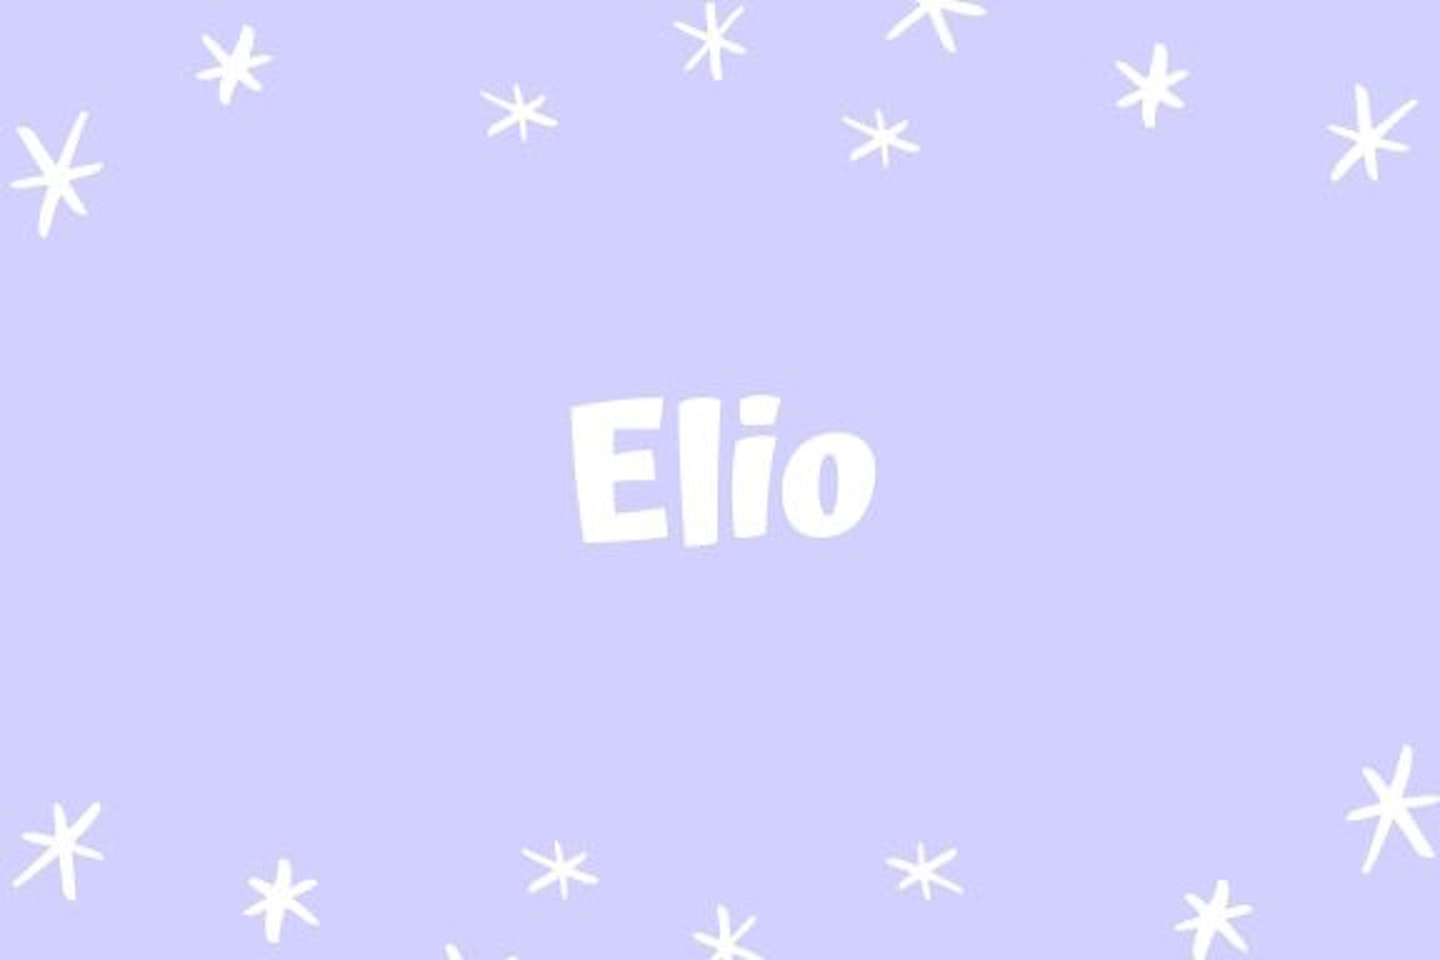 Elio